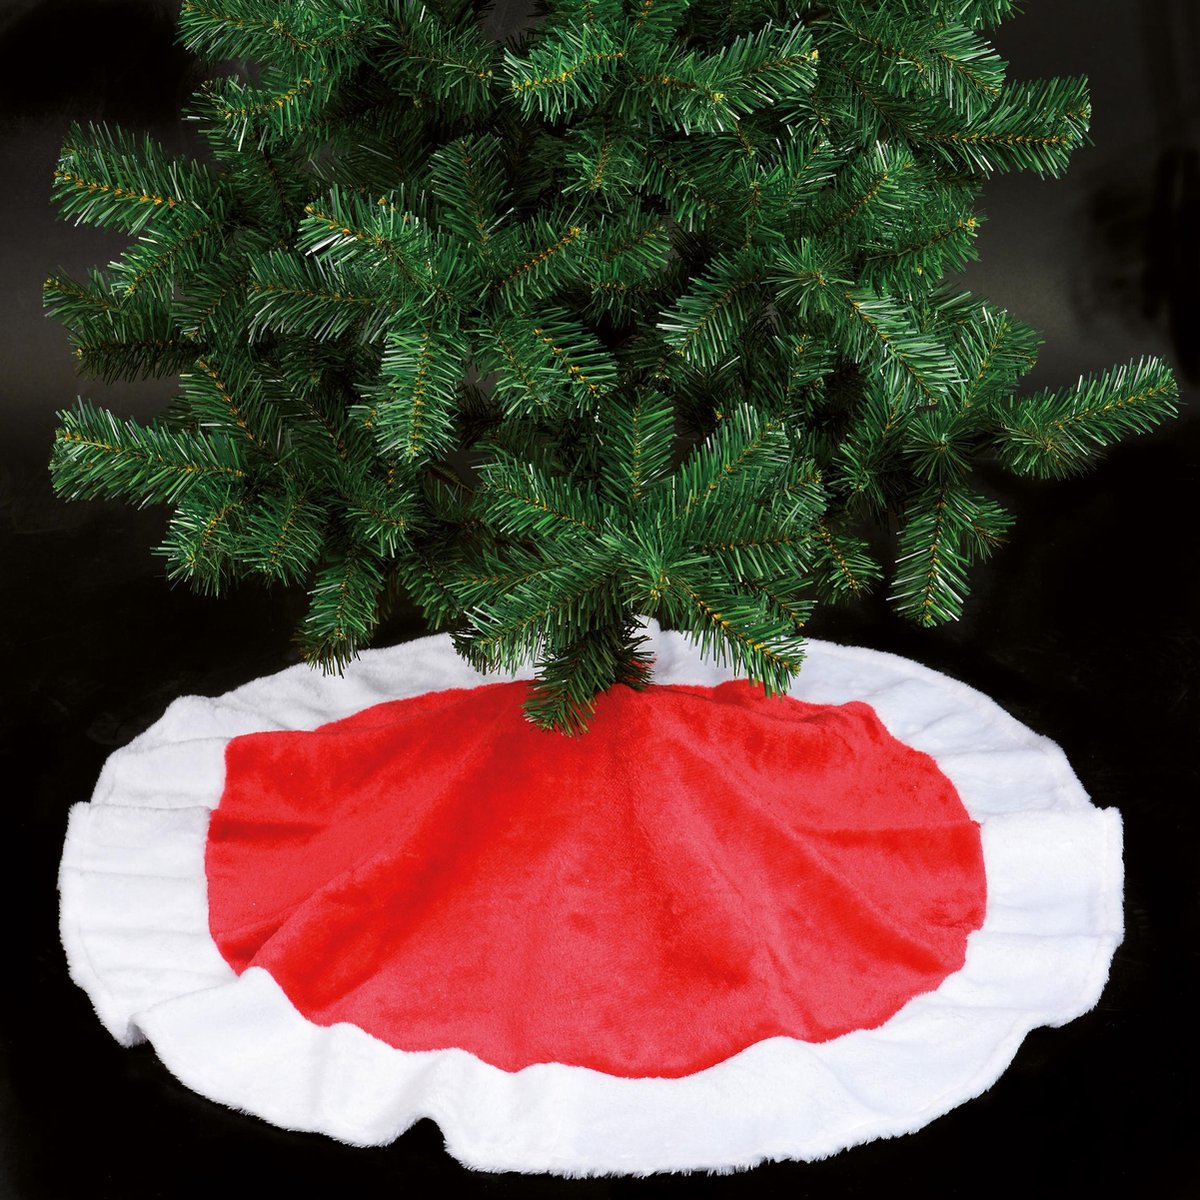 Kerstboom rok - Kerstboomrok/kerstboom kleed rood 90 cm - Kerstboom rok/rokken - Joyeux noel